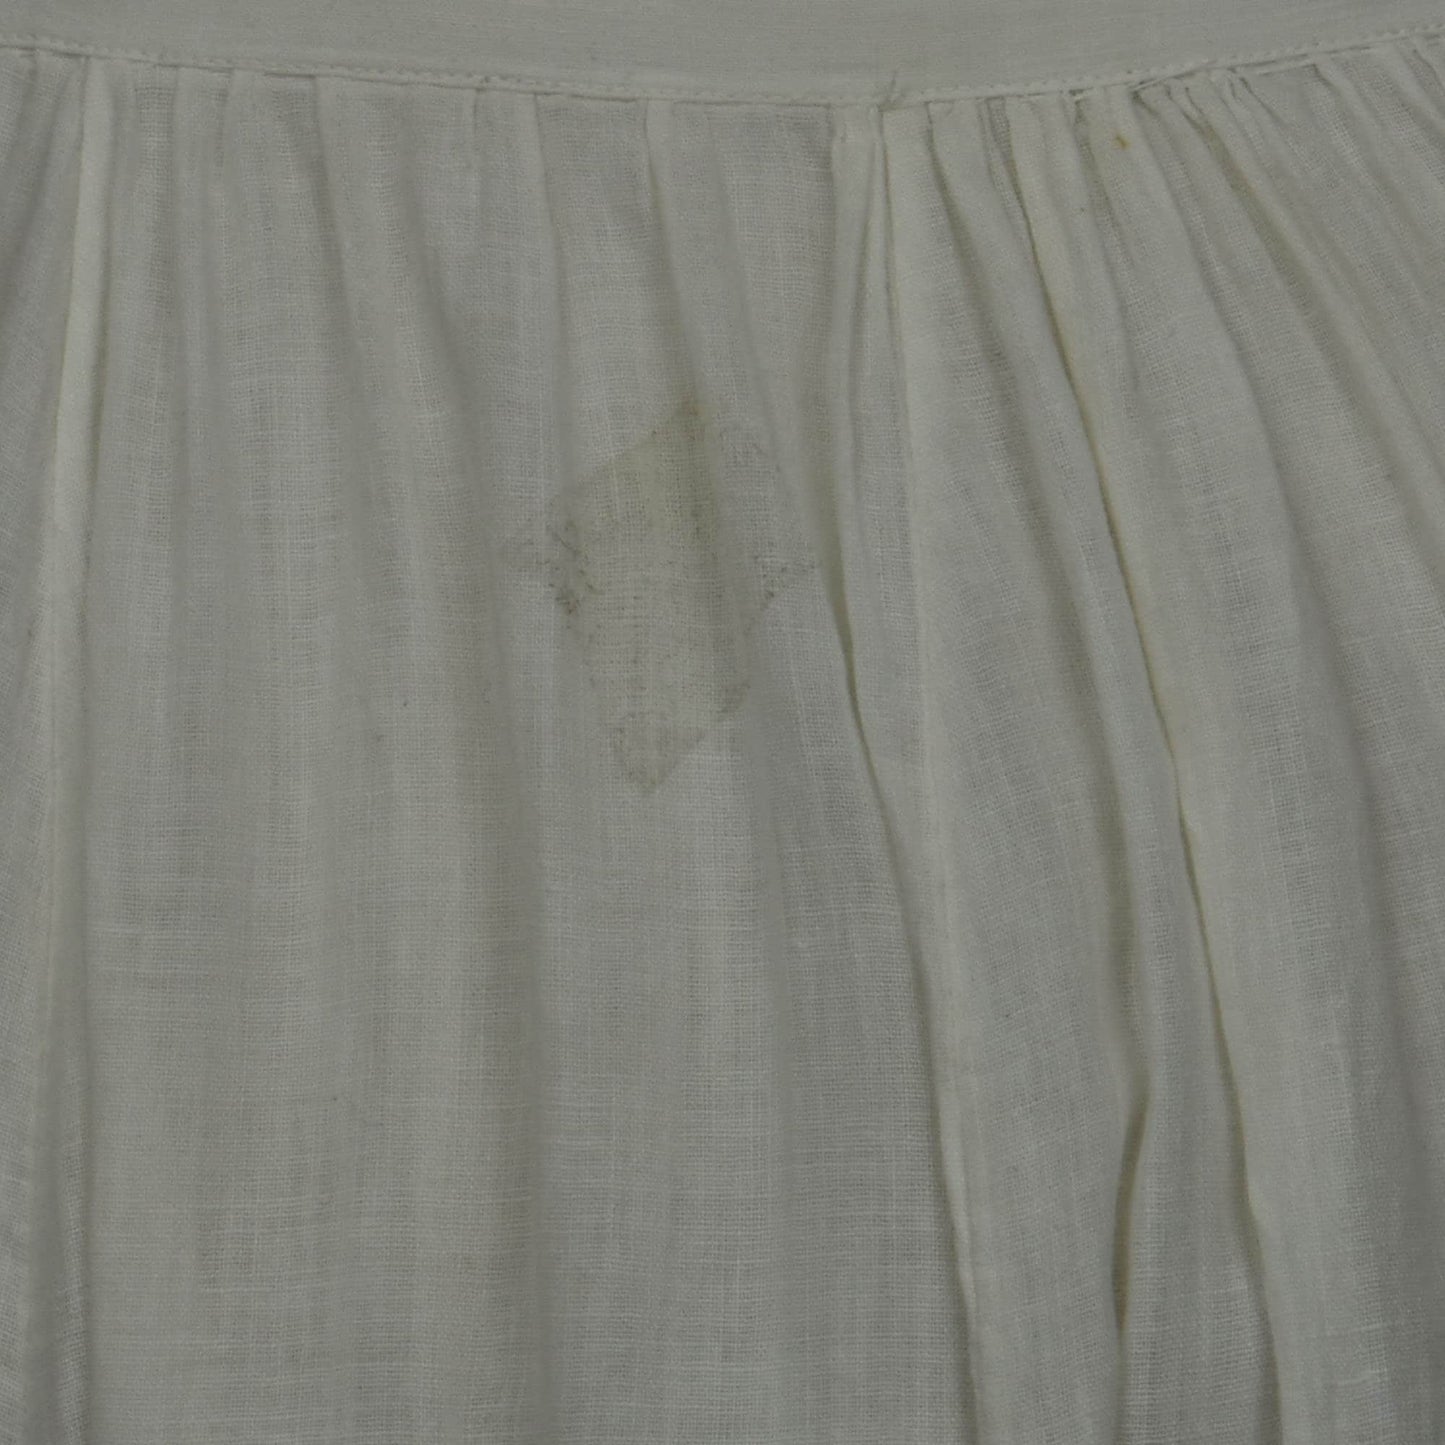 Vintage Petticoat Cotton White Voile Lace Long Victorian Pioneer Era Antique Skirt